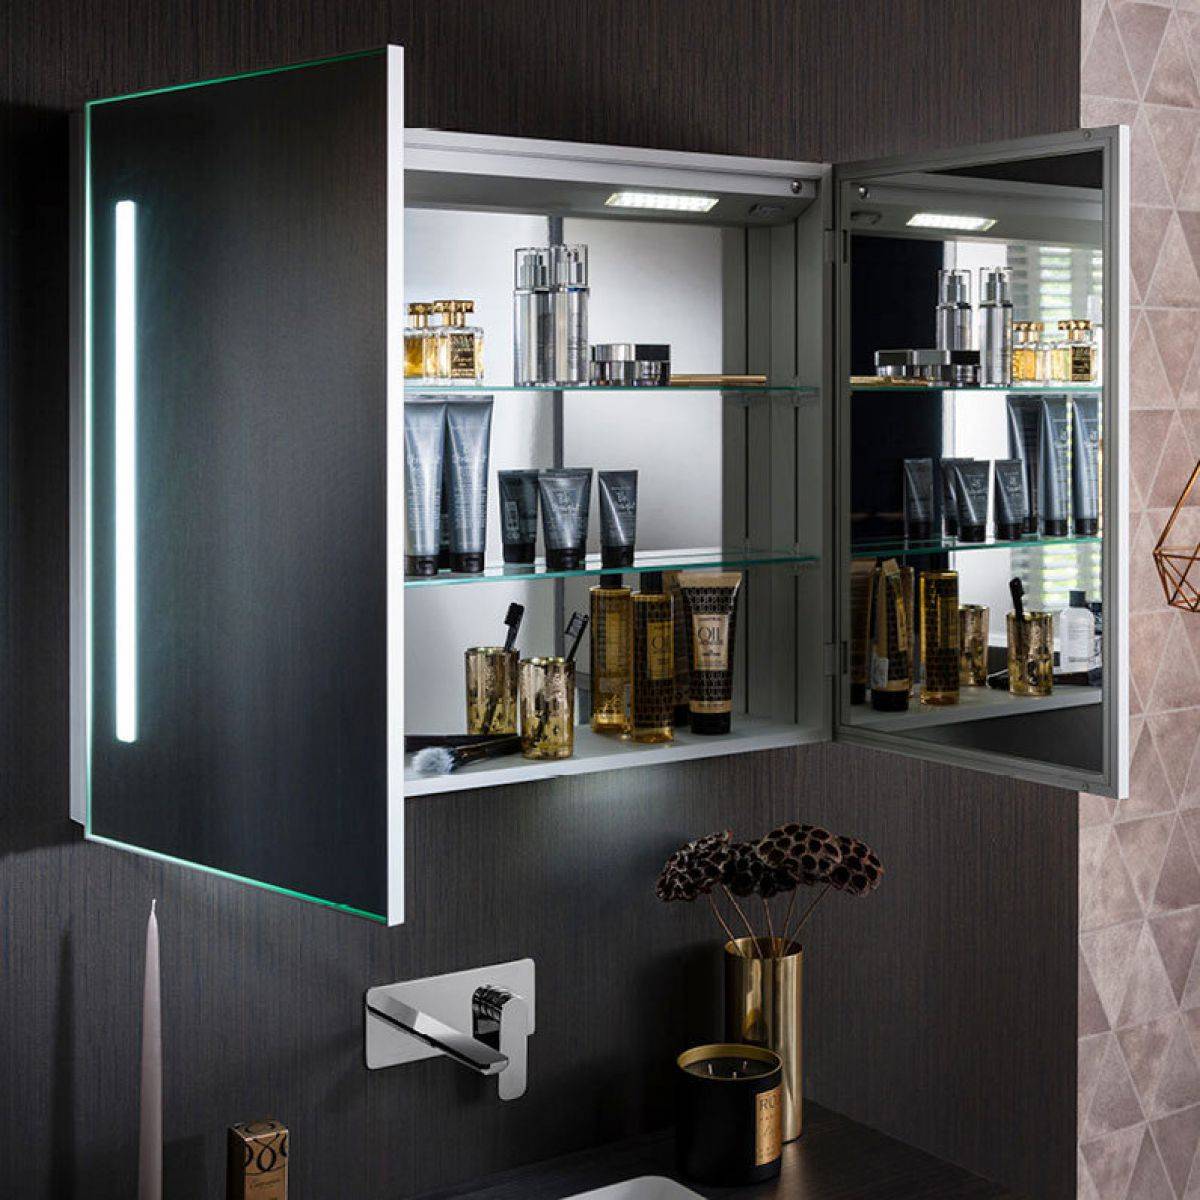 Illuminated Mirror Cabinets